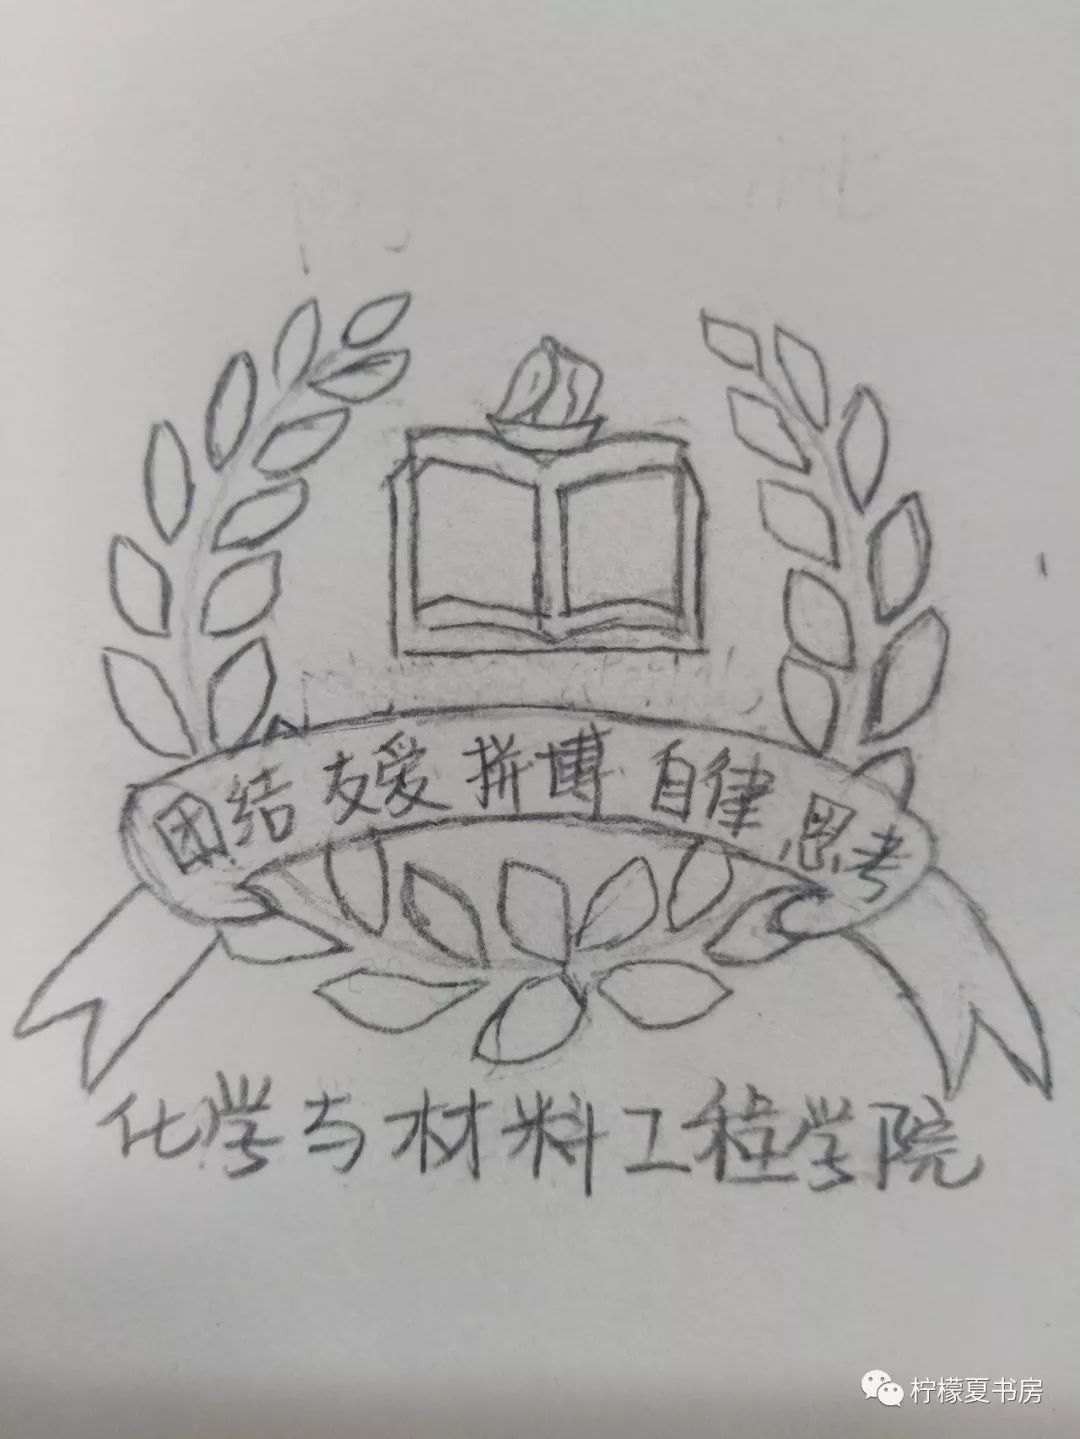 班级徽章logo设计手绘图片